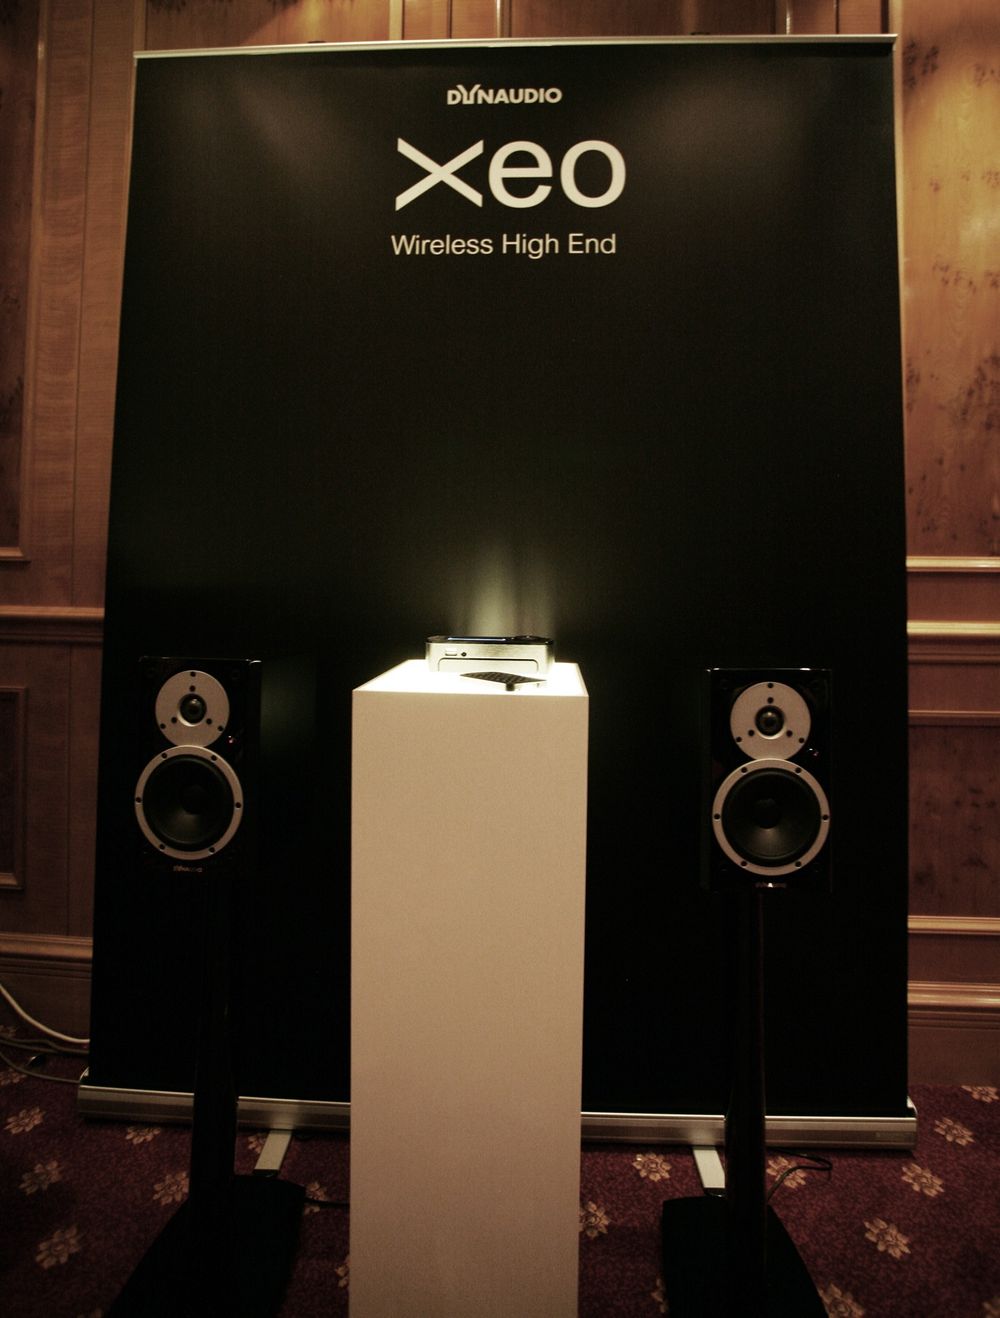 MESSE: Danske Dynaudio lanserte Xeo, som de kaller "verdens første trådløse high-end-høyttalere". Hittil har ikke trådløse høyttalere hatt god nok lydkvalitet, så vi er spente på om disse leverer varene.